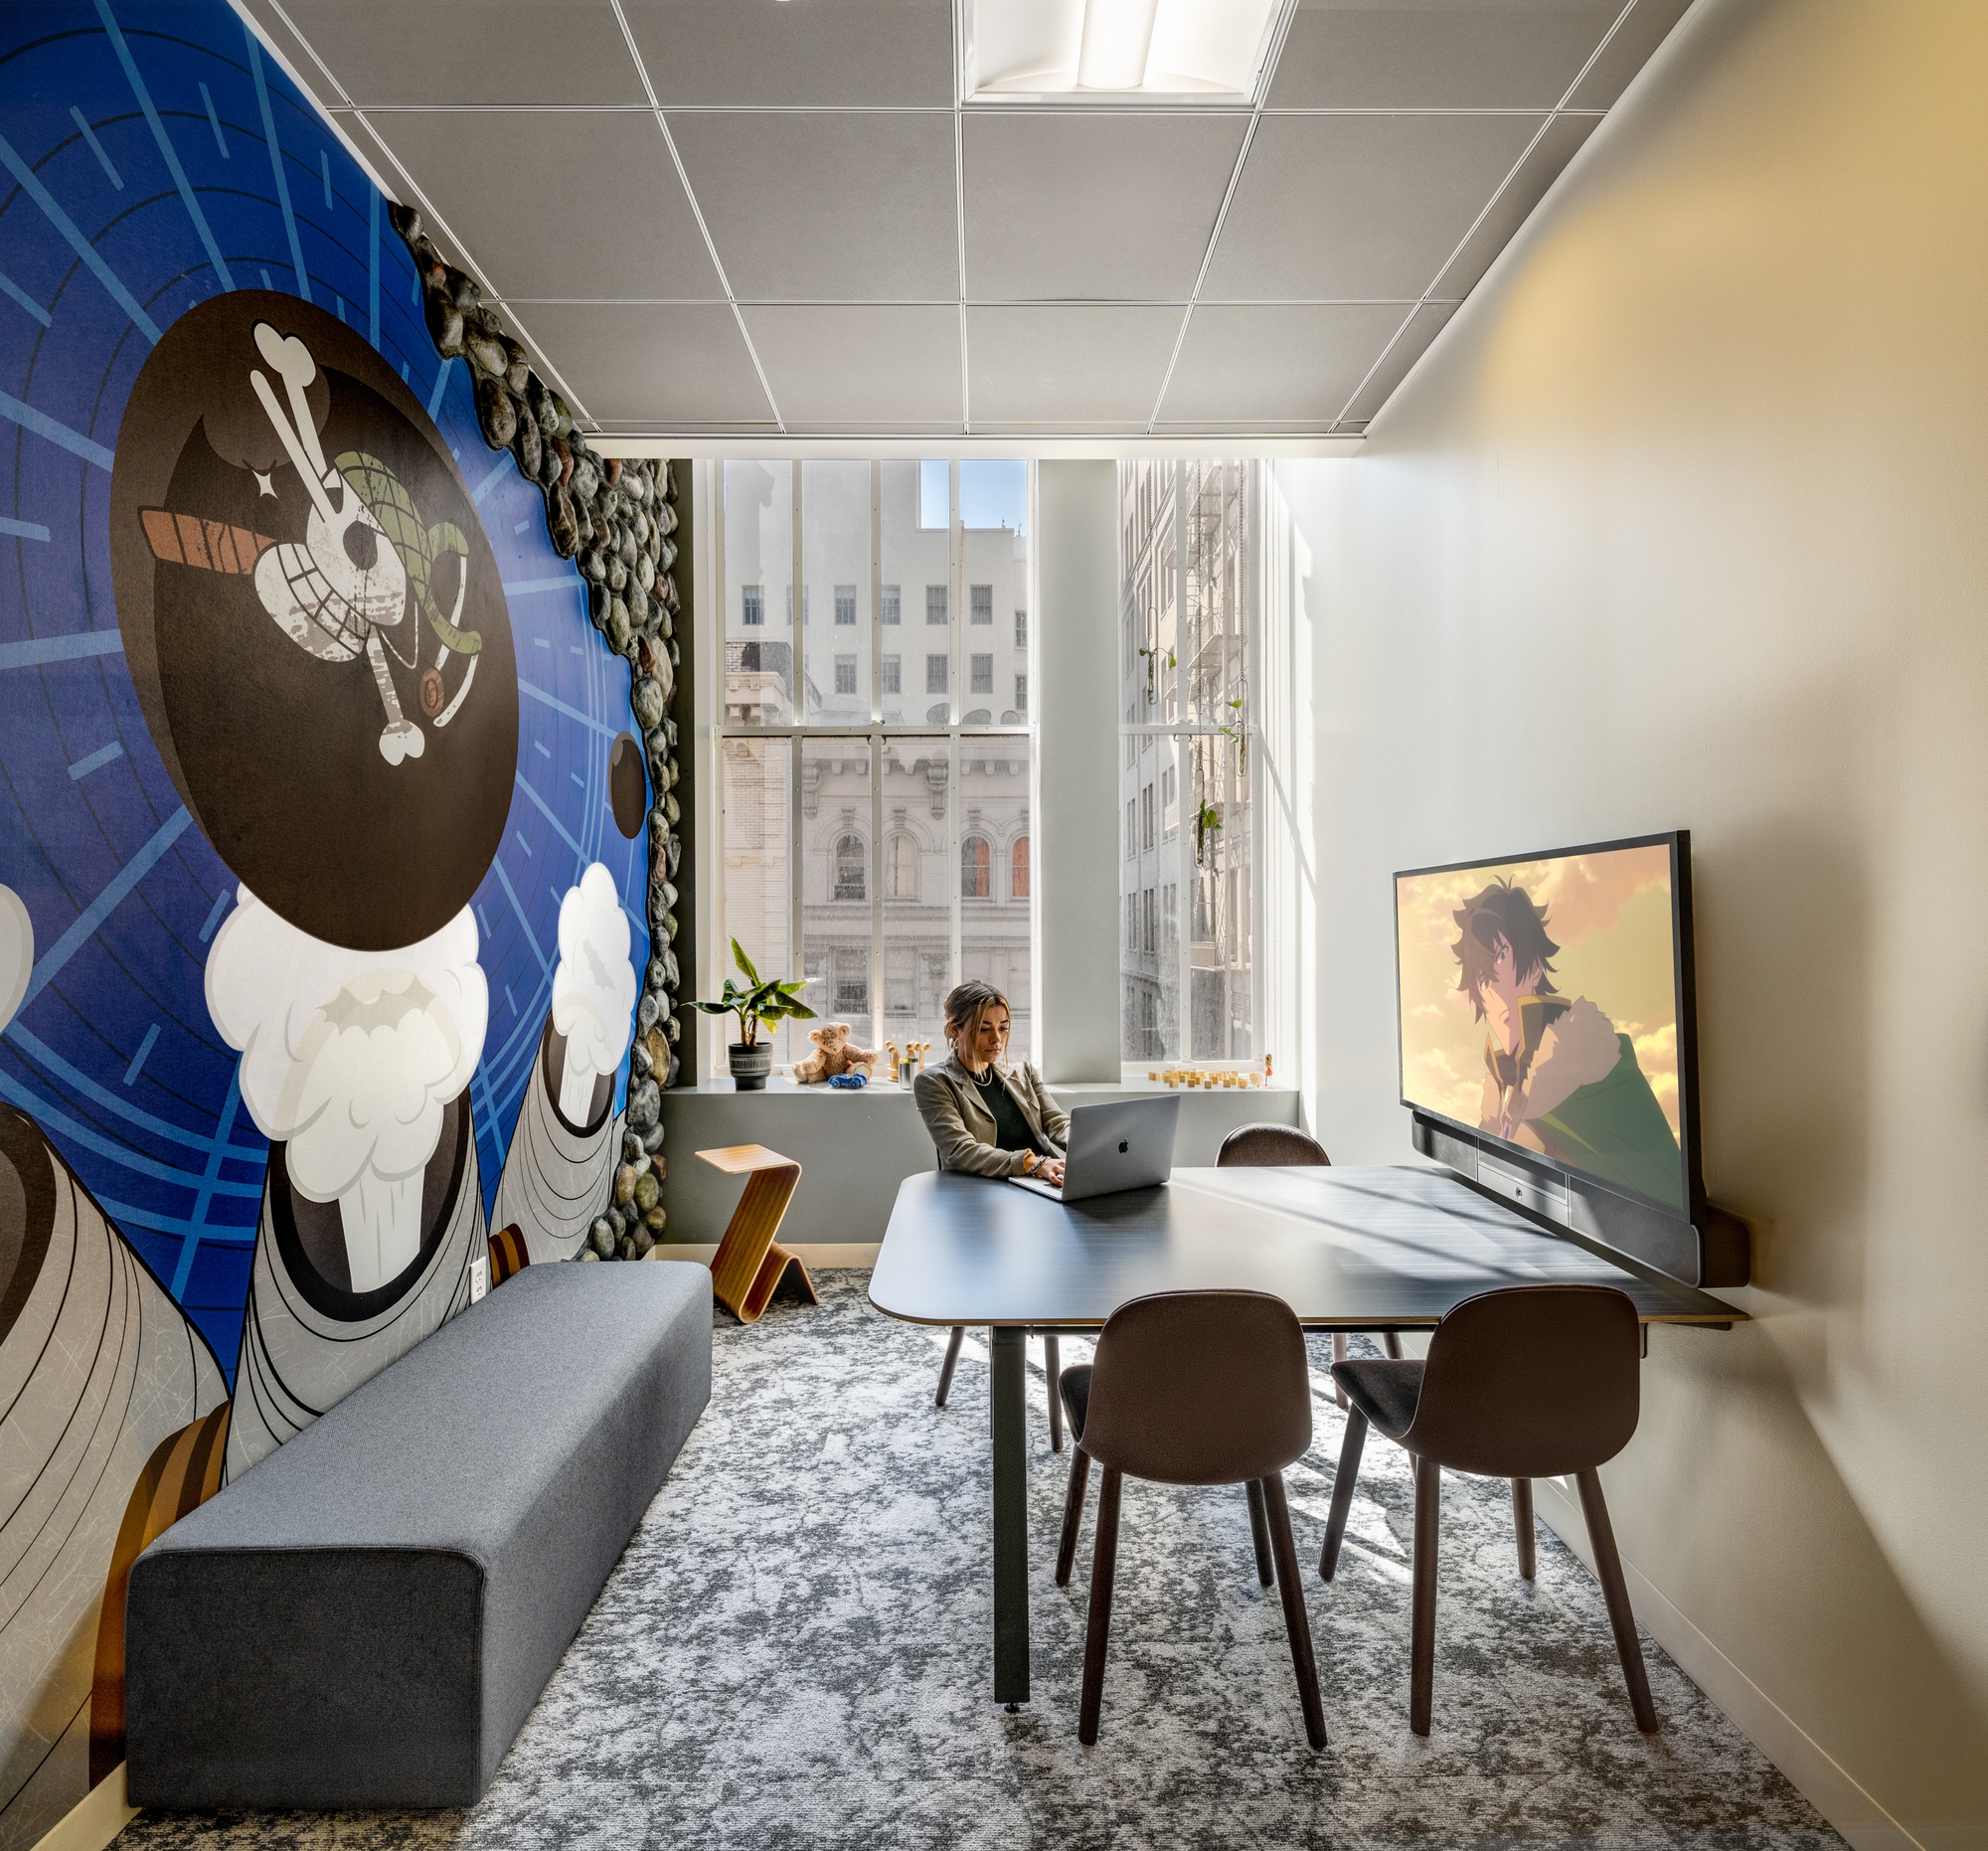 图片[11]|Crunchyroll办公室——旧金山|ART-Arrakis | 建筑室内设计的创新与灵感